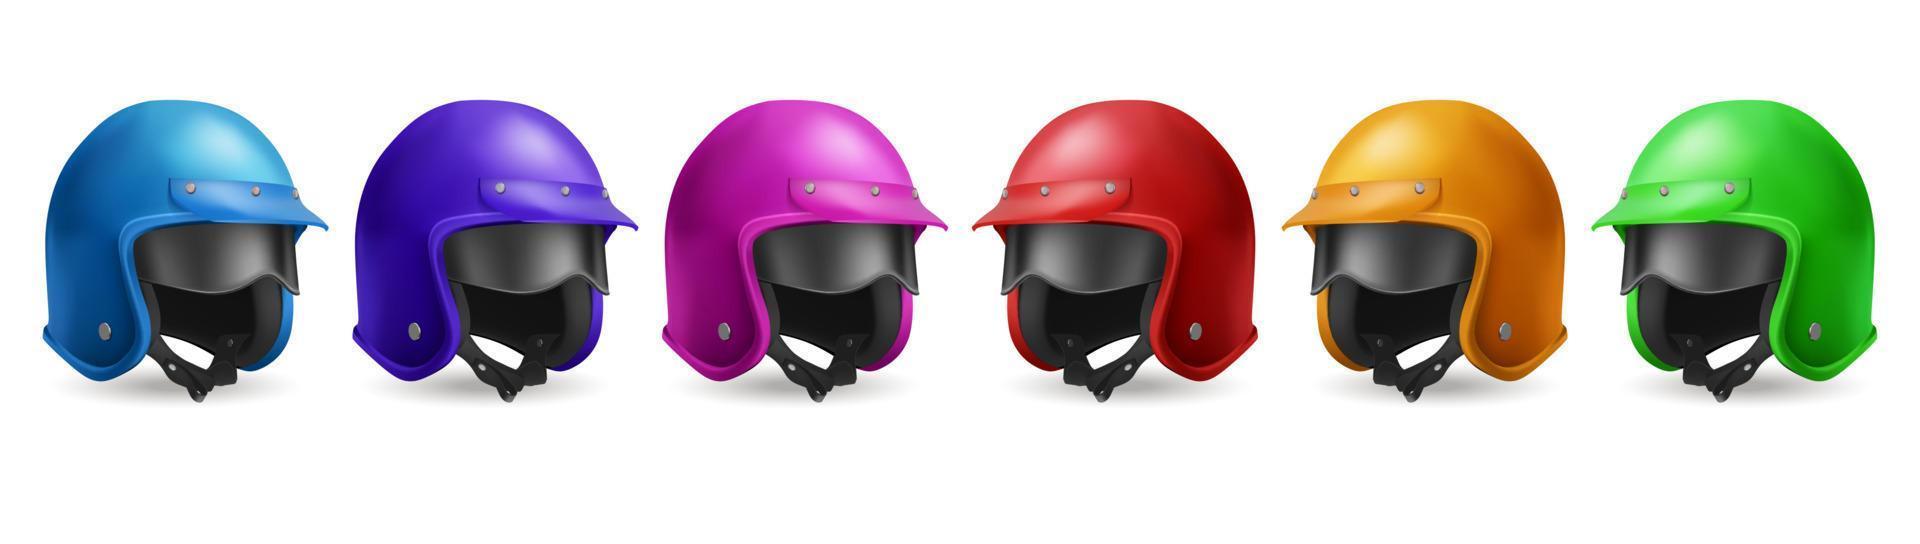 conjunto de casco de motocicleta para carrera y paseo en scooter vector